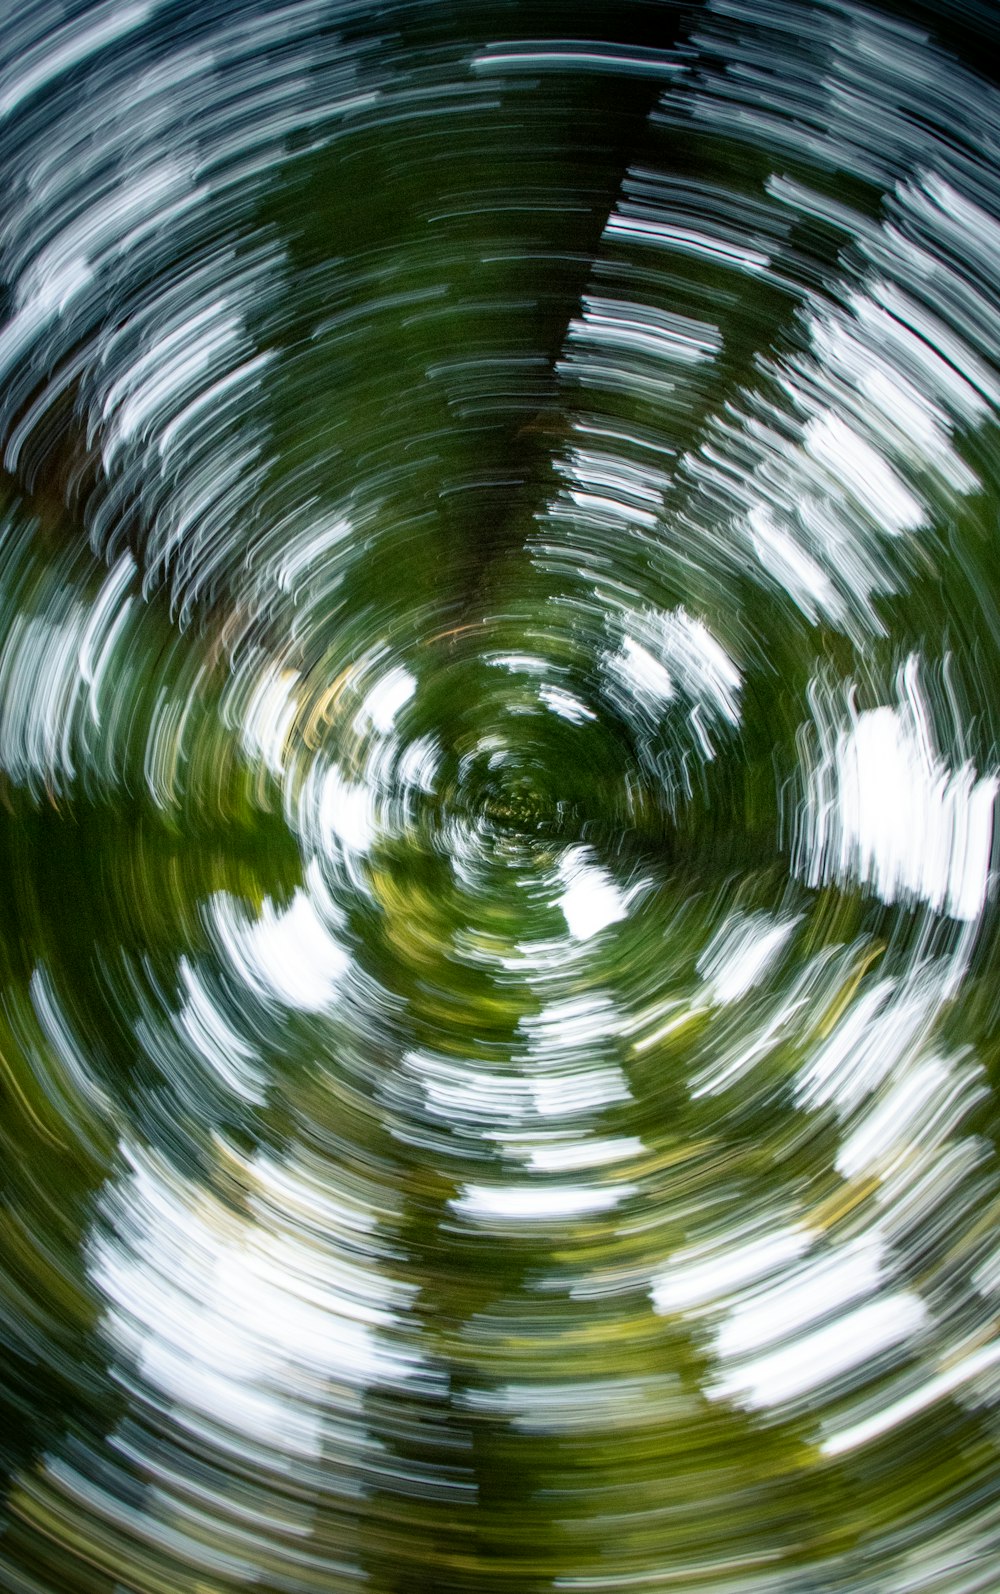 Eine kreisförmige Ansicht von Bäumen in einem Wald